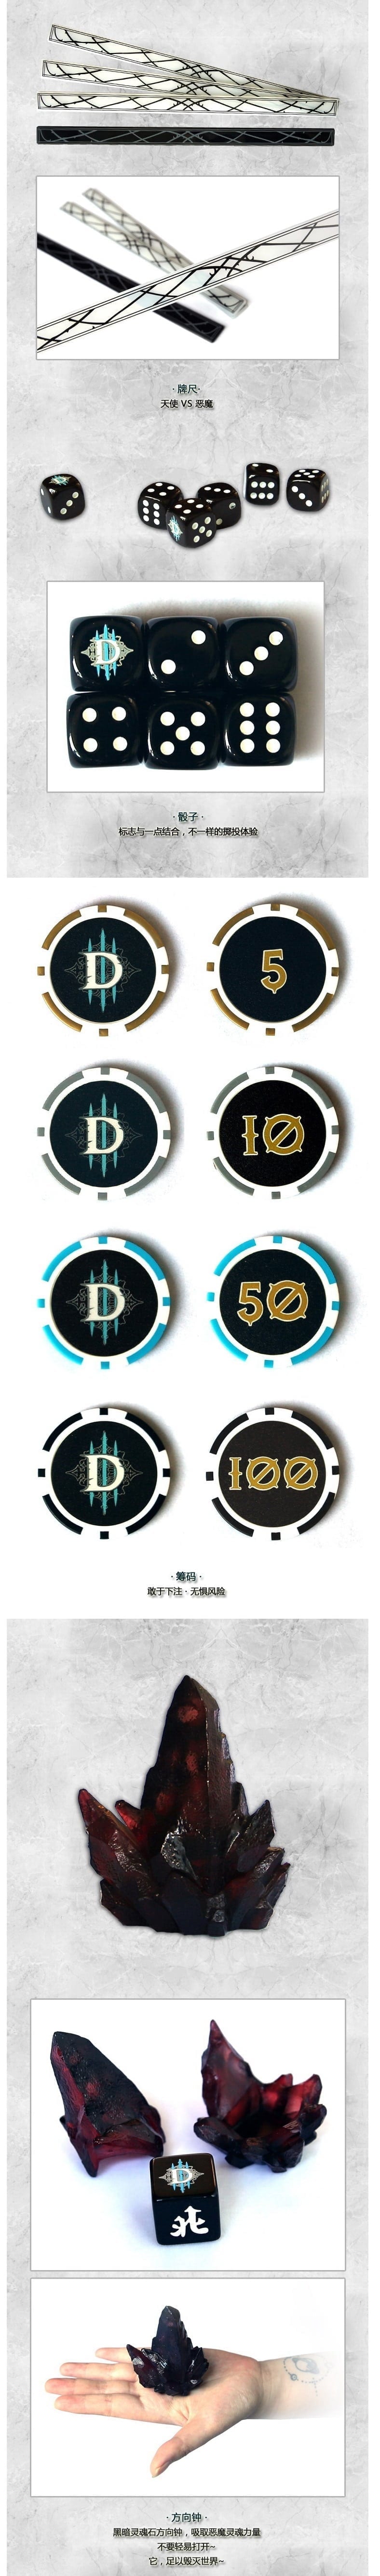 diablo-iii-mahjong-set-2